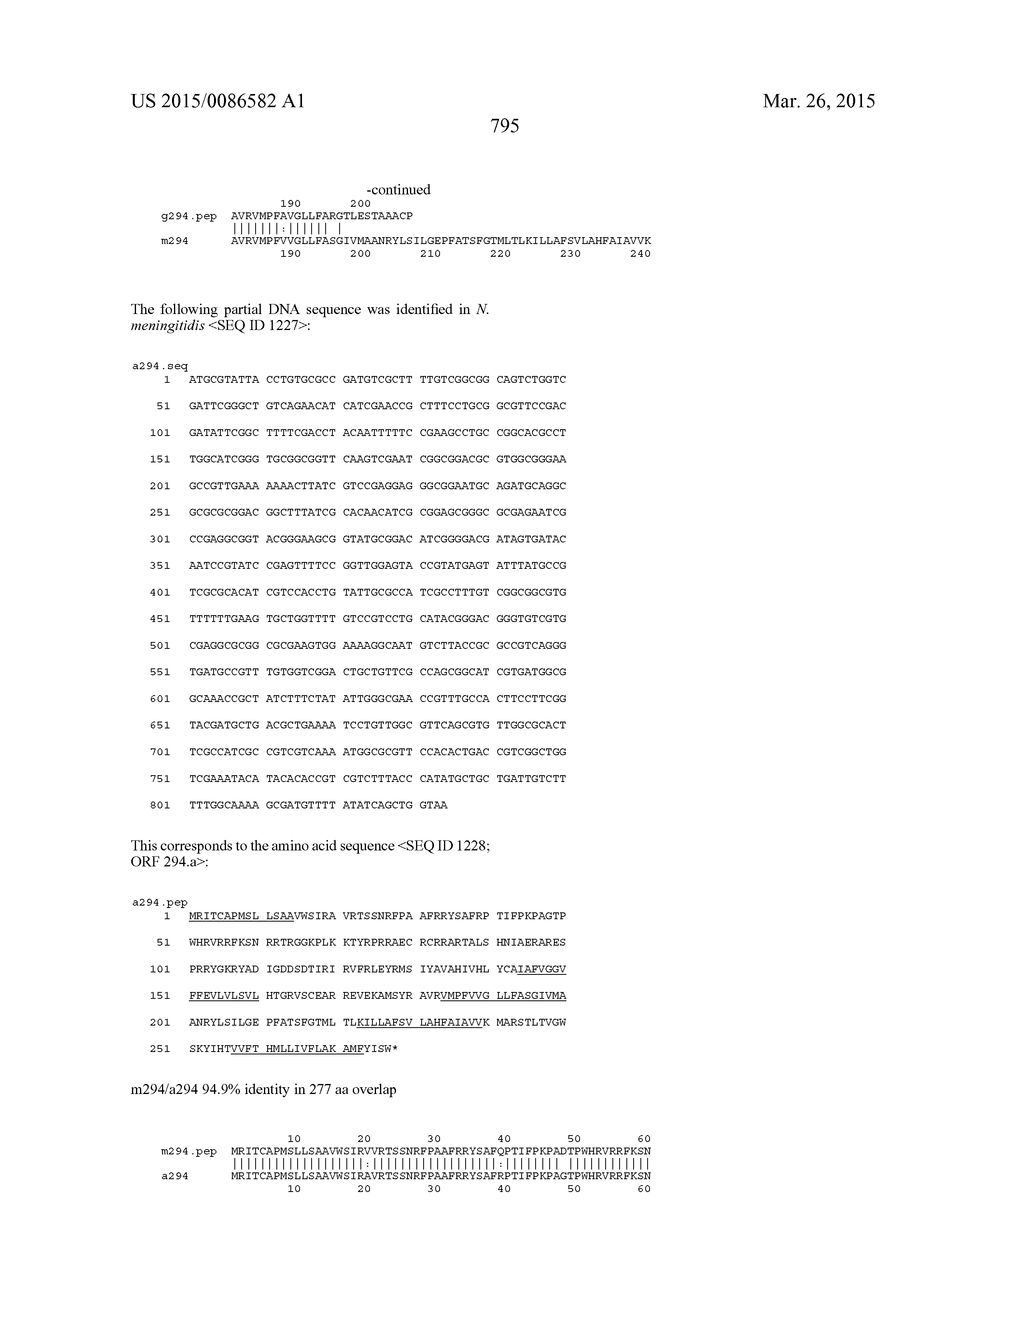 NEISSERIA MENINGITIDIS ANTIGENS AND COMPOSITIONS - diagram, schematic, and image 827